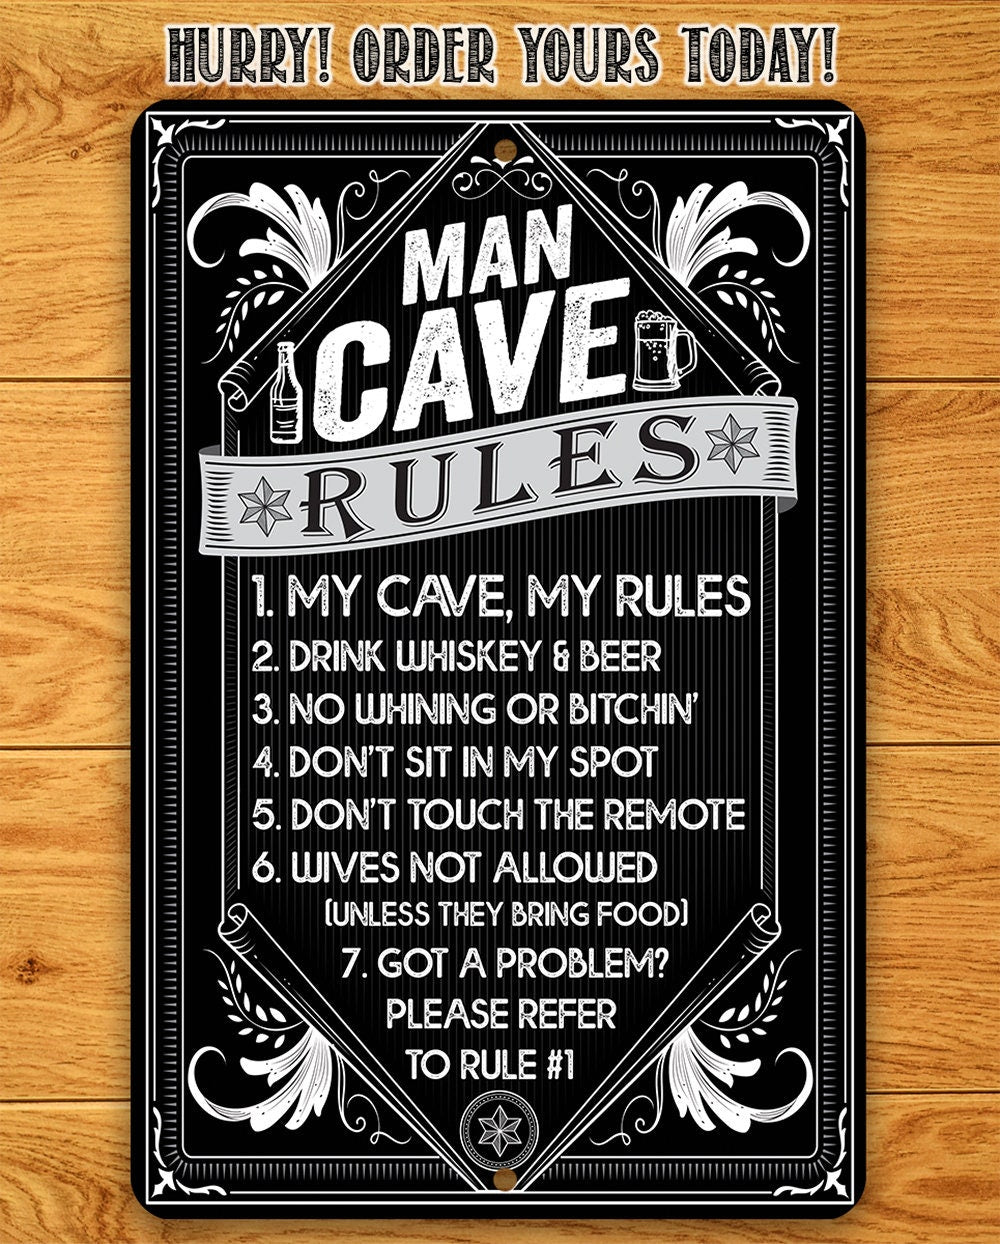 Man Cave Rules - Metal Sign Metal Sign Lone Star Art 